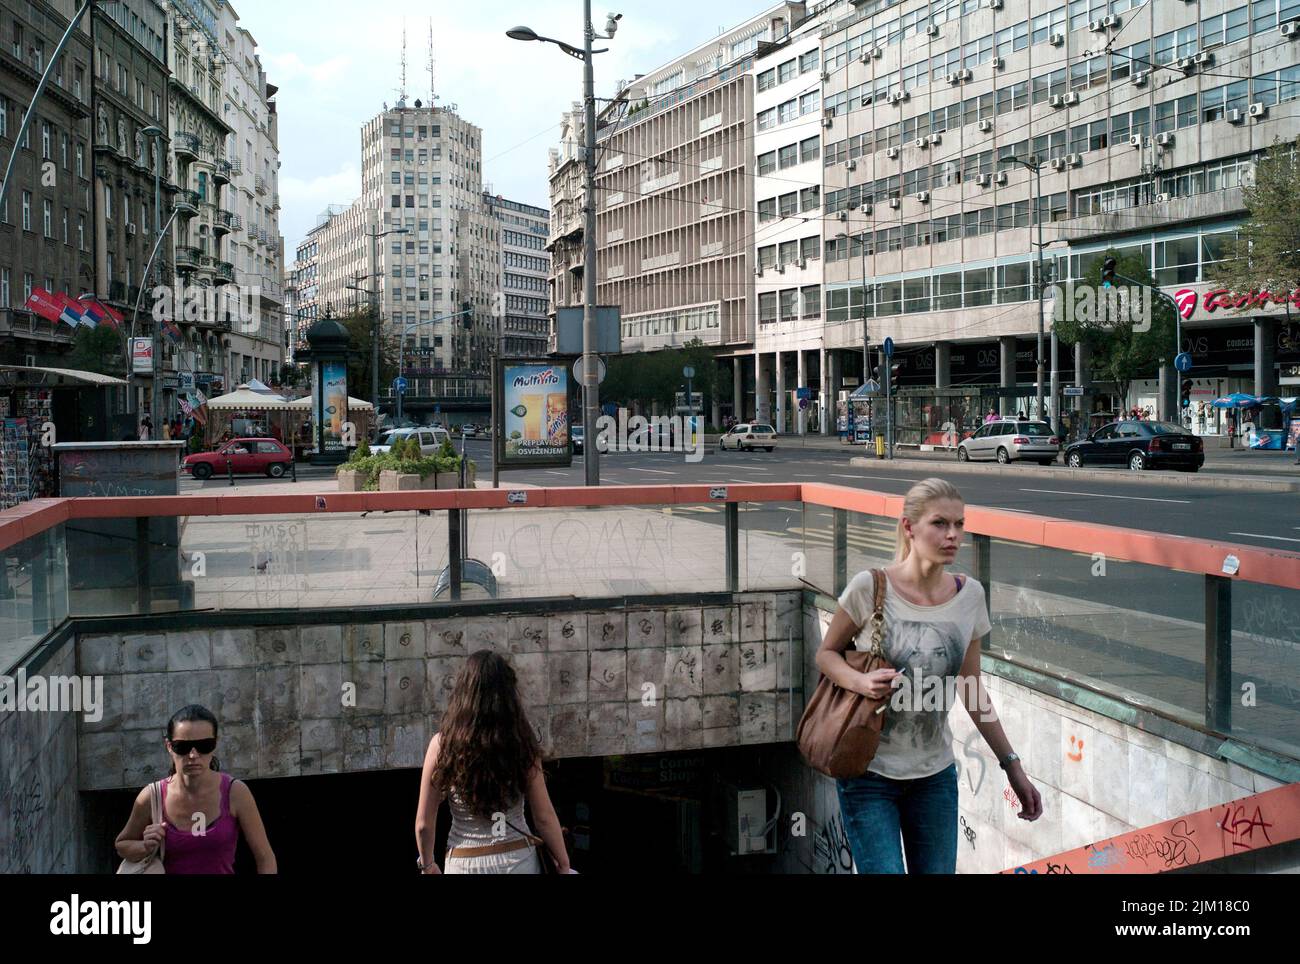 Belgrade, Serbie. Au centre-ville dans la capitale serbe, une femme sort d'un passage souterrain. Banque D'Images